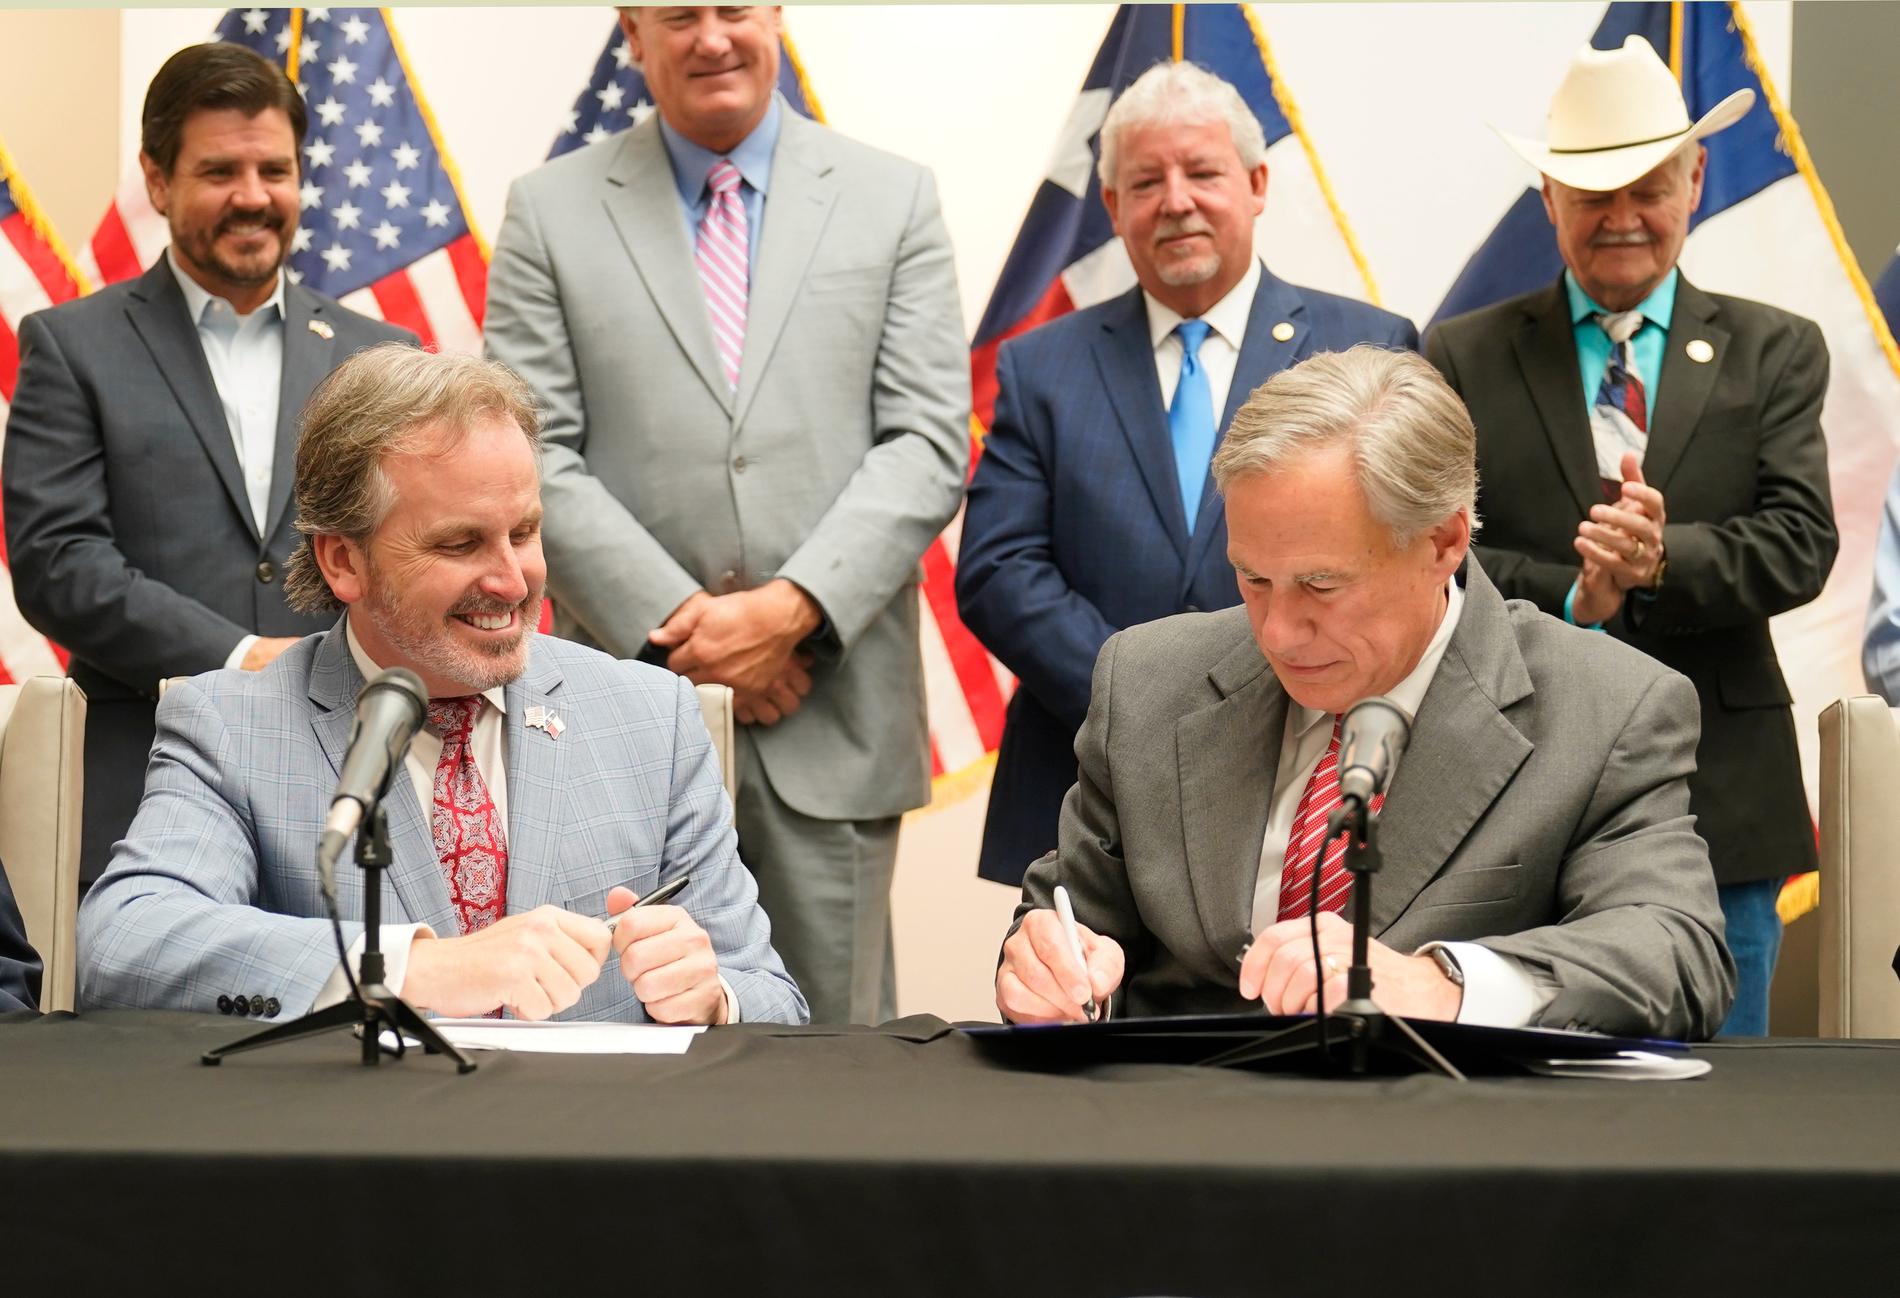 Texas guvernör Greg Abbott (till höger) signerar den nya vallagen.